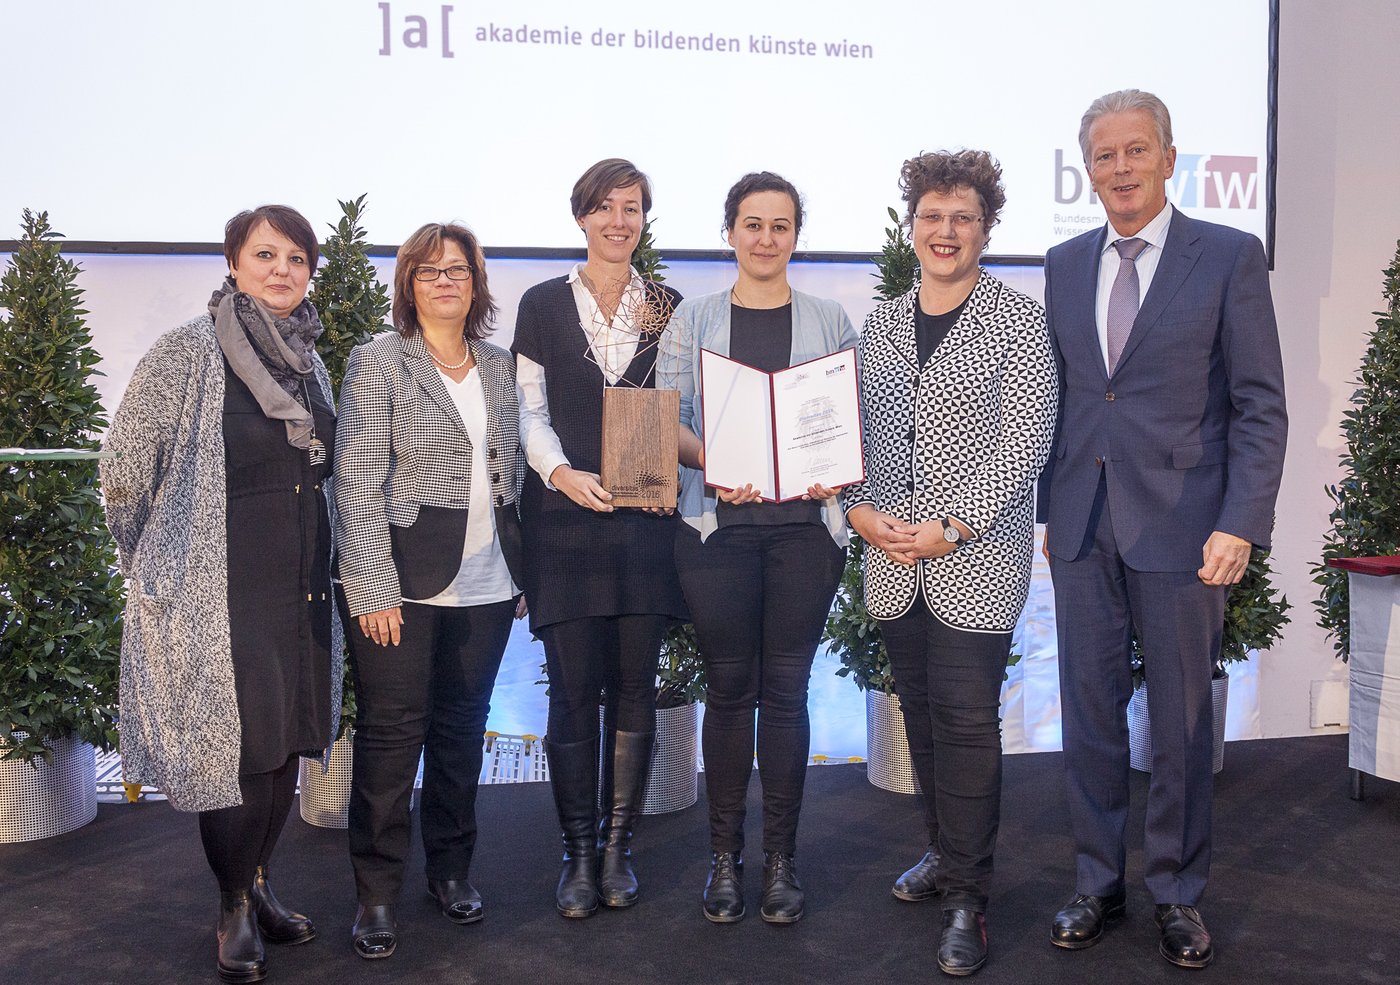 Am 06.12.2016 wurde der Akademie der bildenden Künste Wien ein  Diversitas-Preis des Bundesministeriums für Wissenschaft, Forschung und  Wirtschaft (BMWFW) für das Projekt
 
  Non-Binary Universities. Maßnahmen  zur Stärkung der Geschlechter-Diversität an Universitäten in Österreich
 
 zuerkannt.